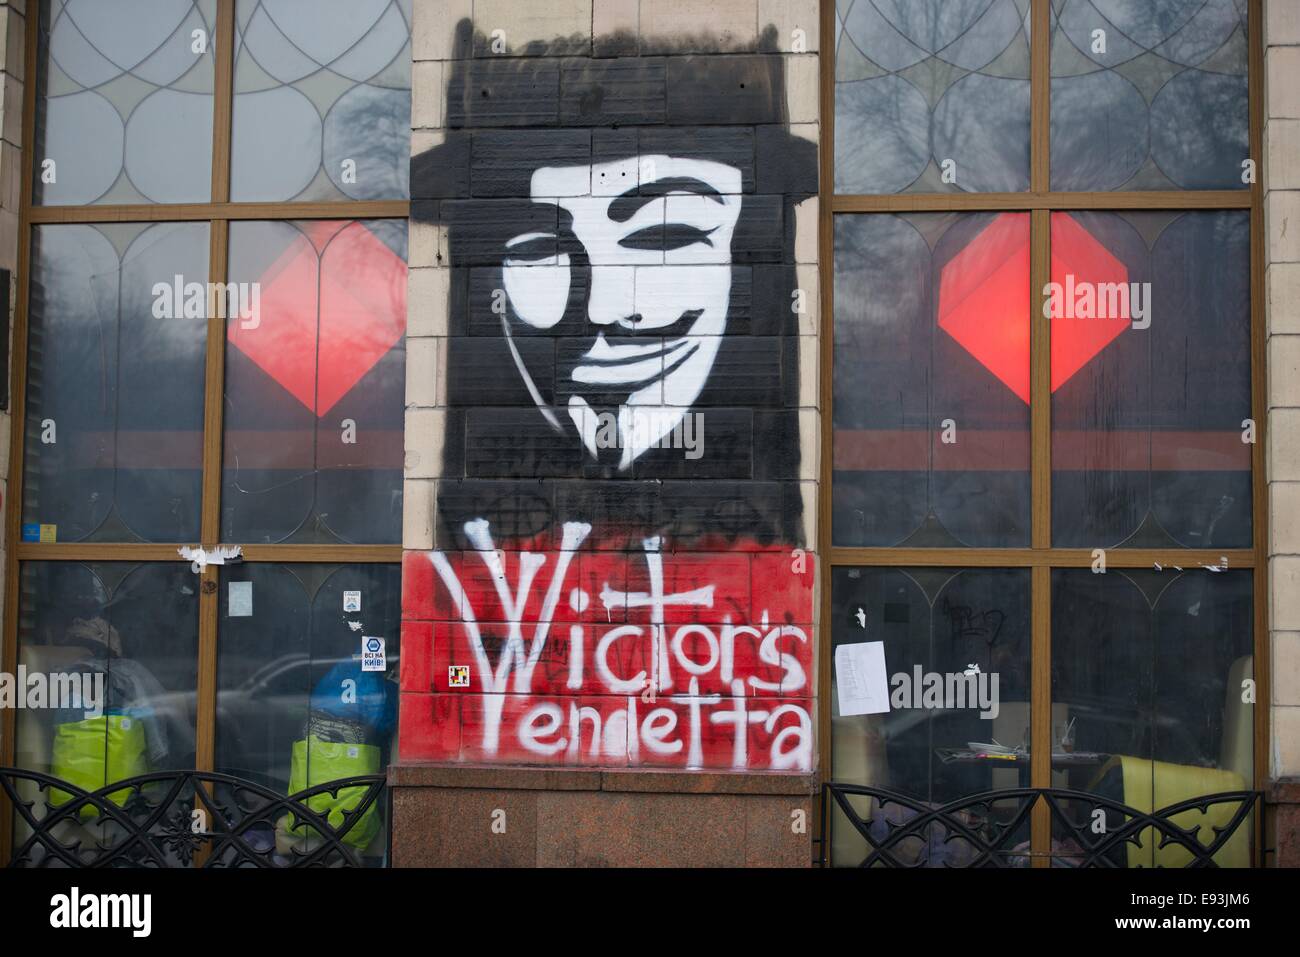 Victors Vendetta garffitti on a building in central Kiev Stock Photo